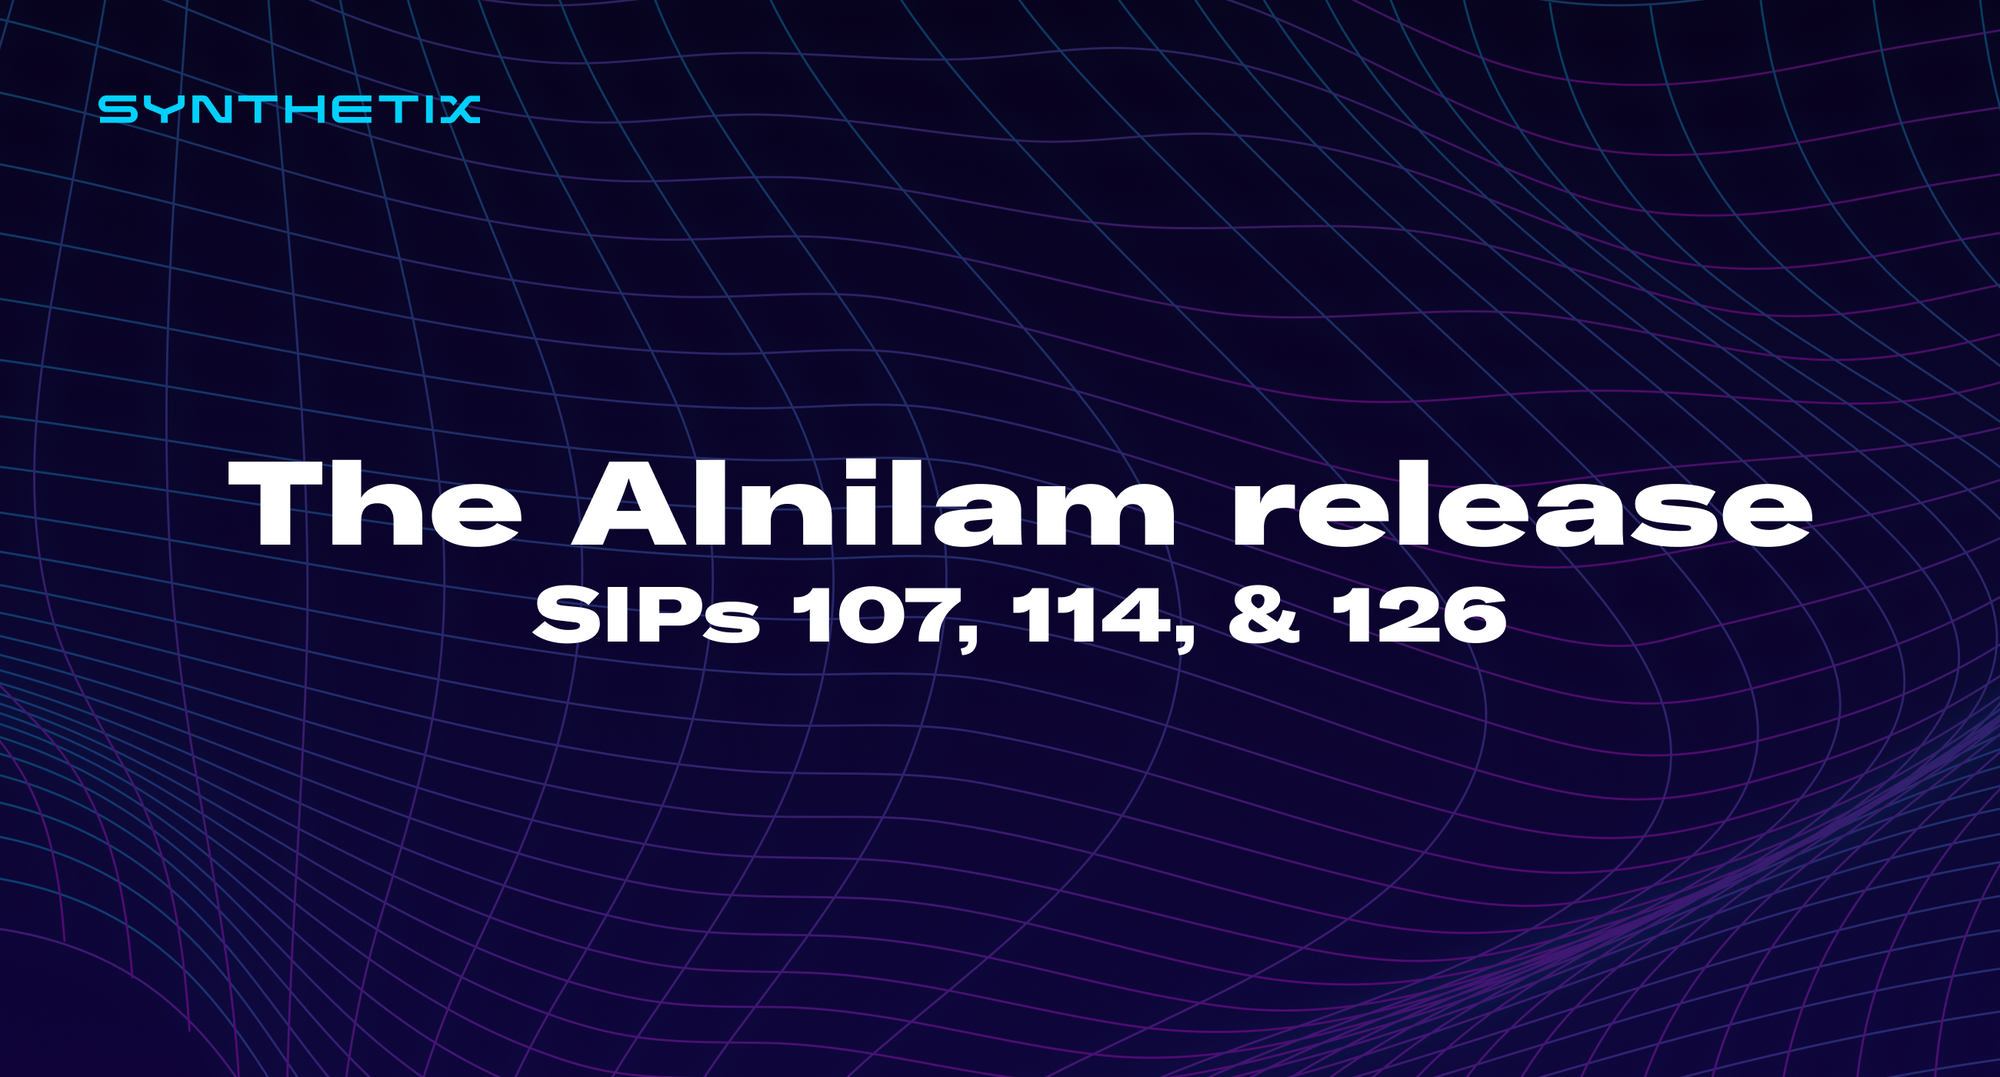 The Alnilam release